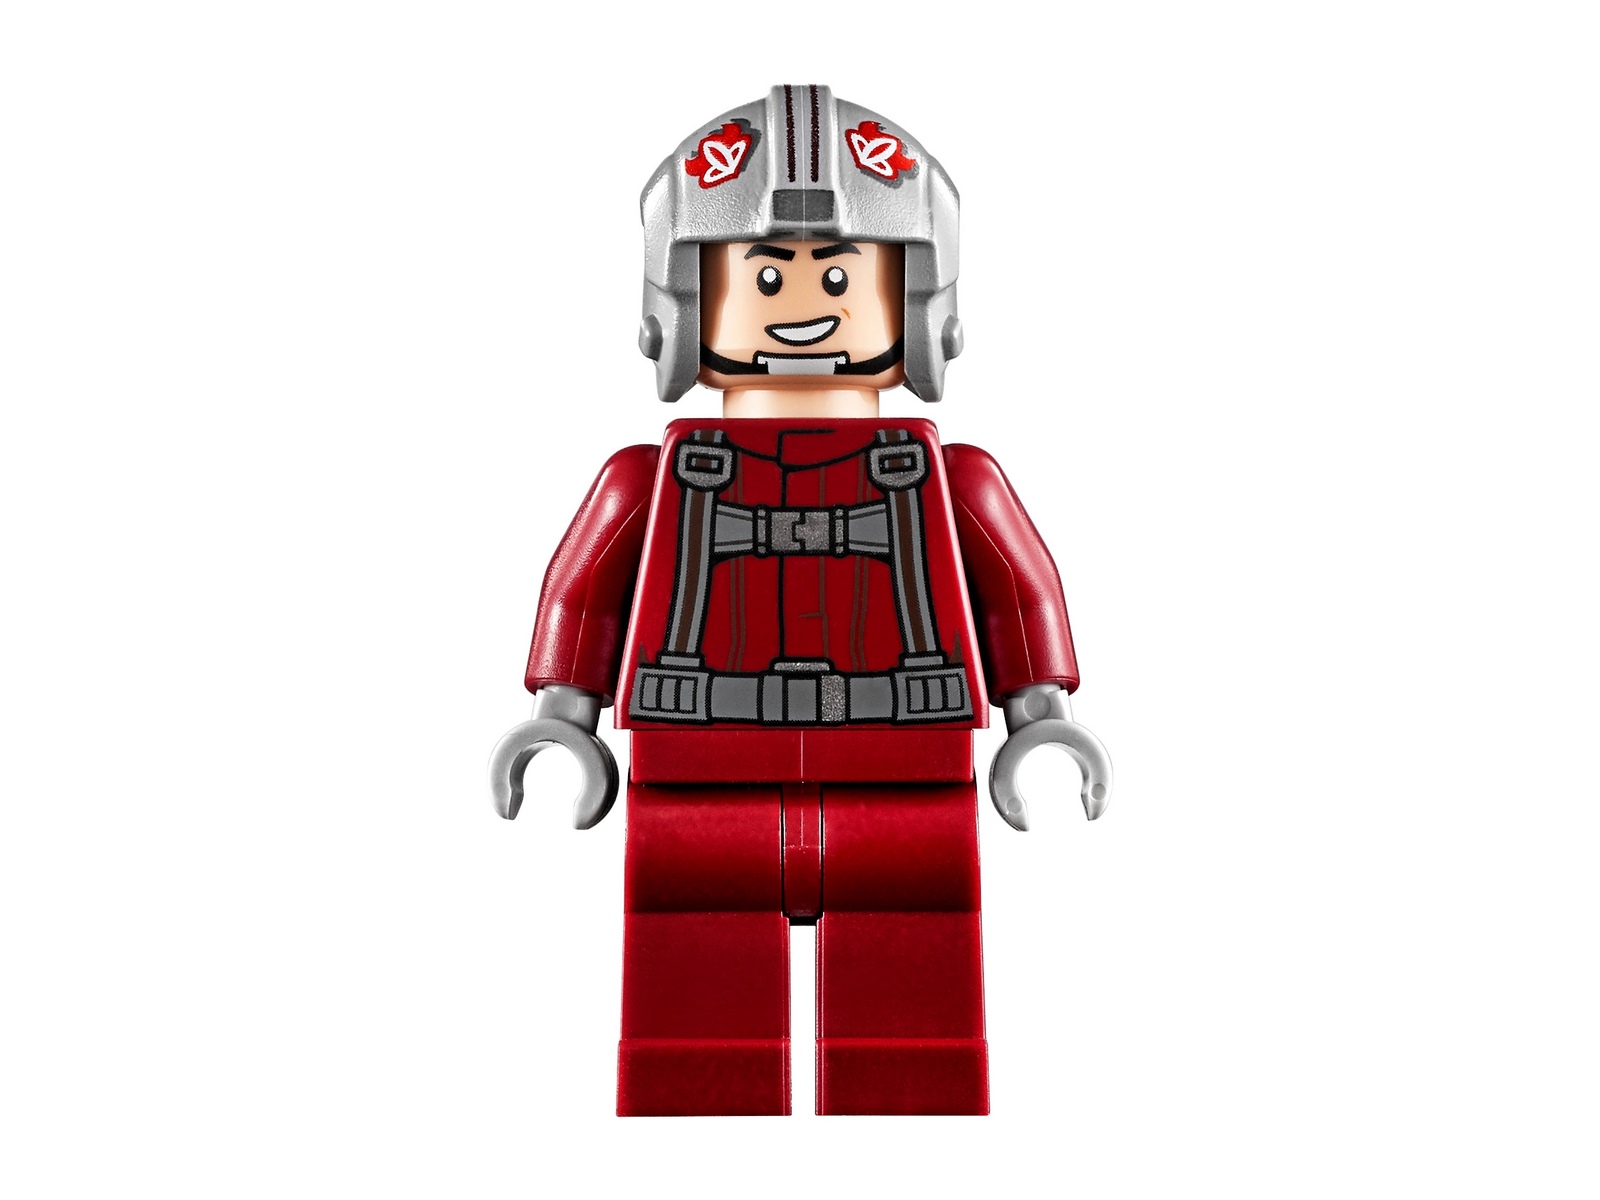 Конструктор LEGO Star Wars «Микрофайтеры: Скайхоппер T-16 против Банты» 75265 / 198 деталей